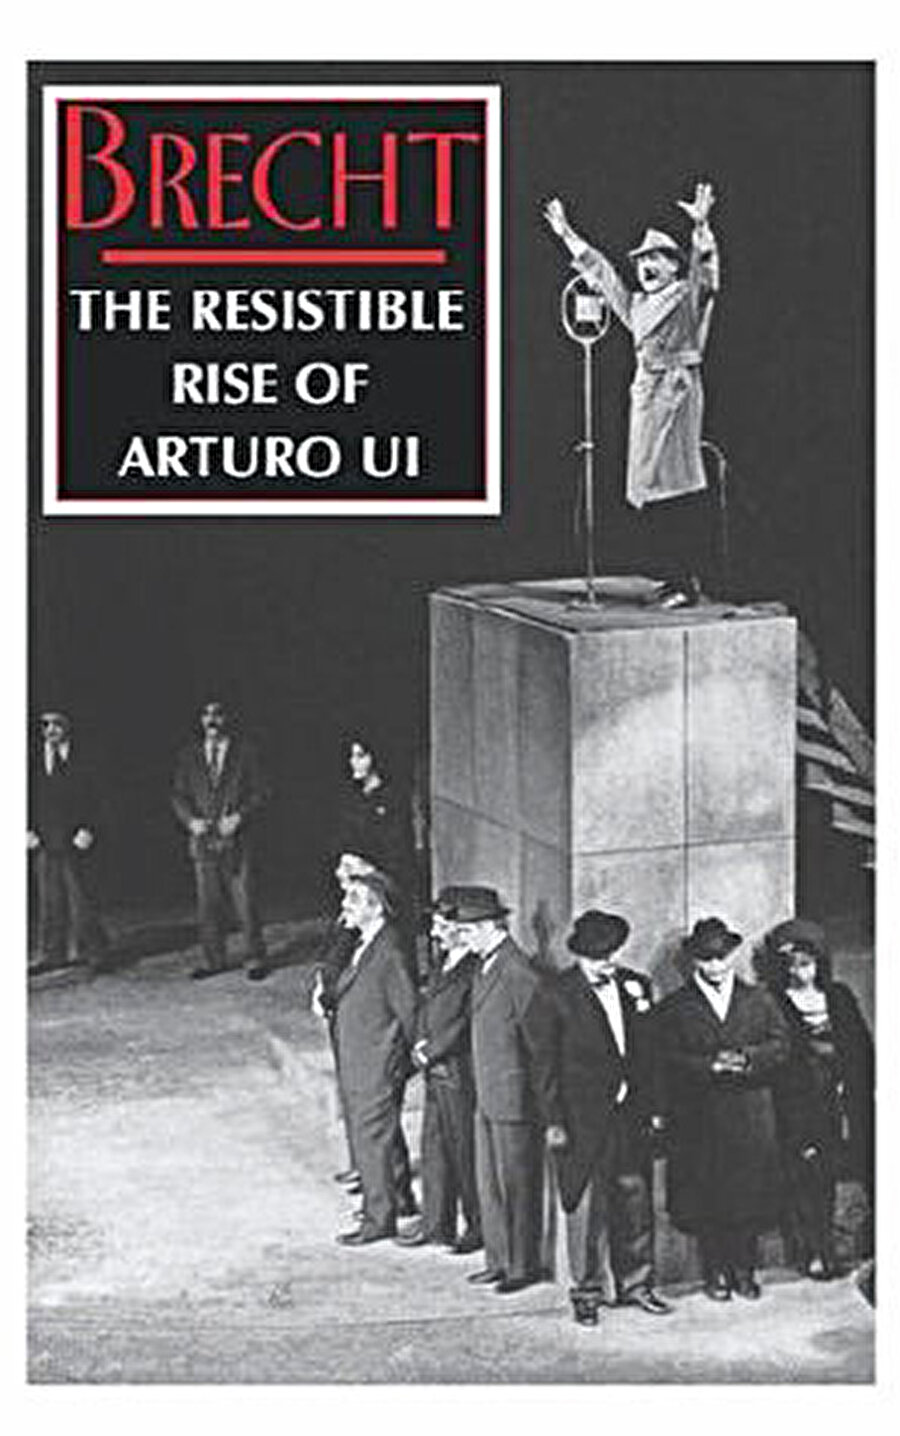 Bertolt Brecht’in Arturo Ui’nin Önlenebilir Tırmanışı